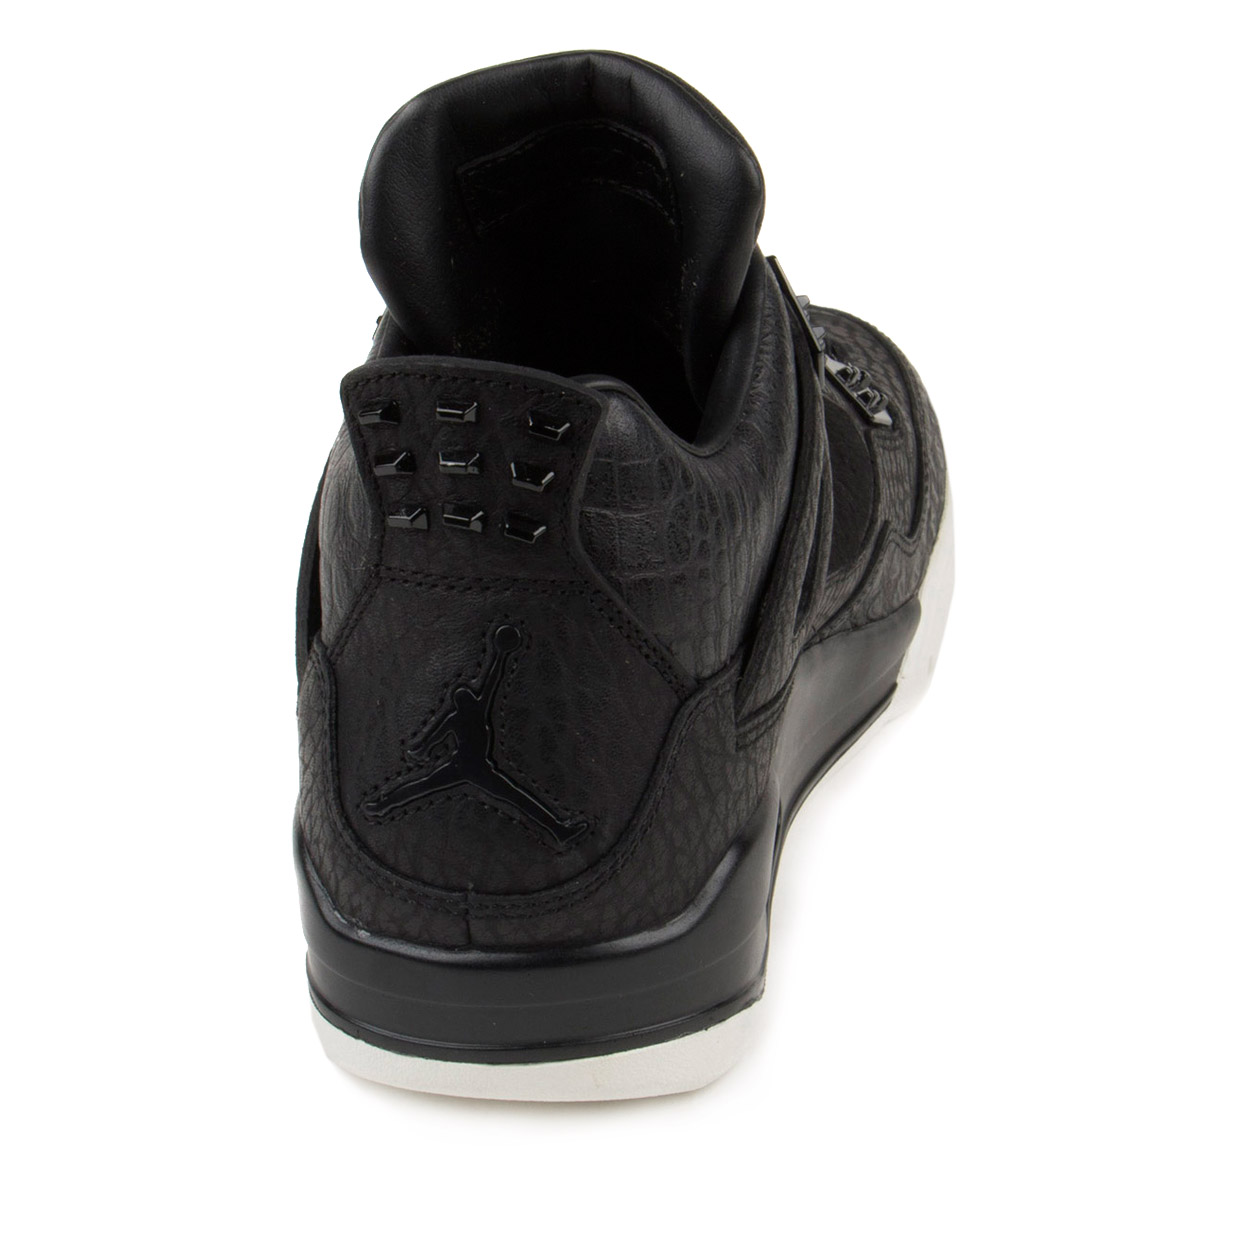 Nike Mens Air Jordan 4 Retro Premium "Pinnacle" Black/Sail 819139-010 - image 4 of 7